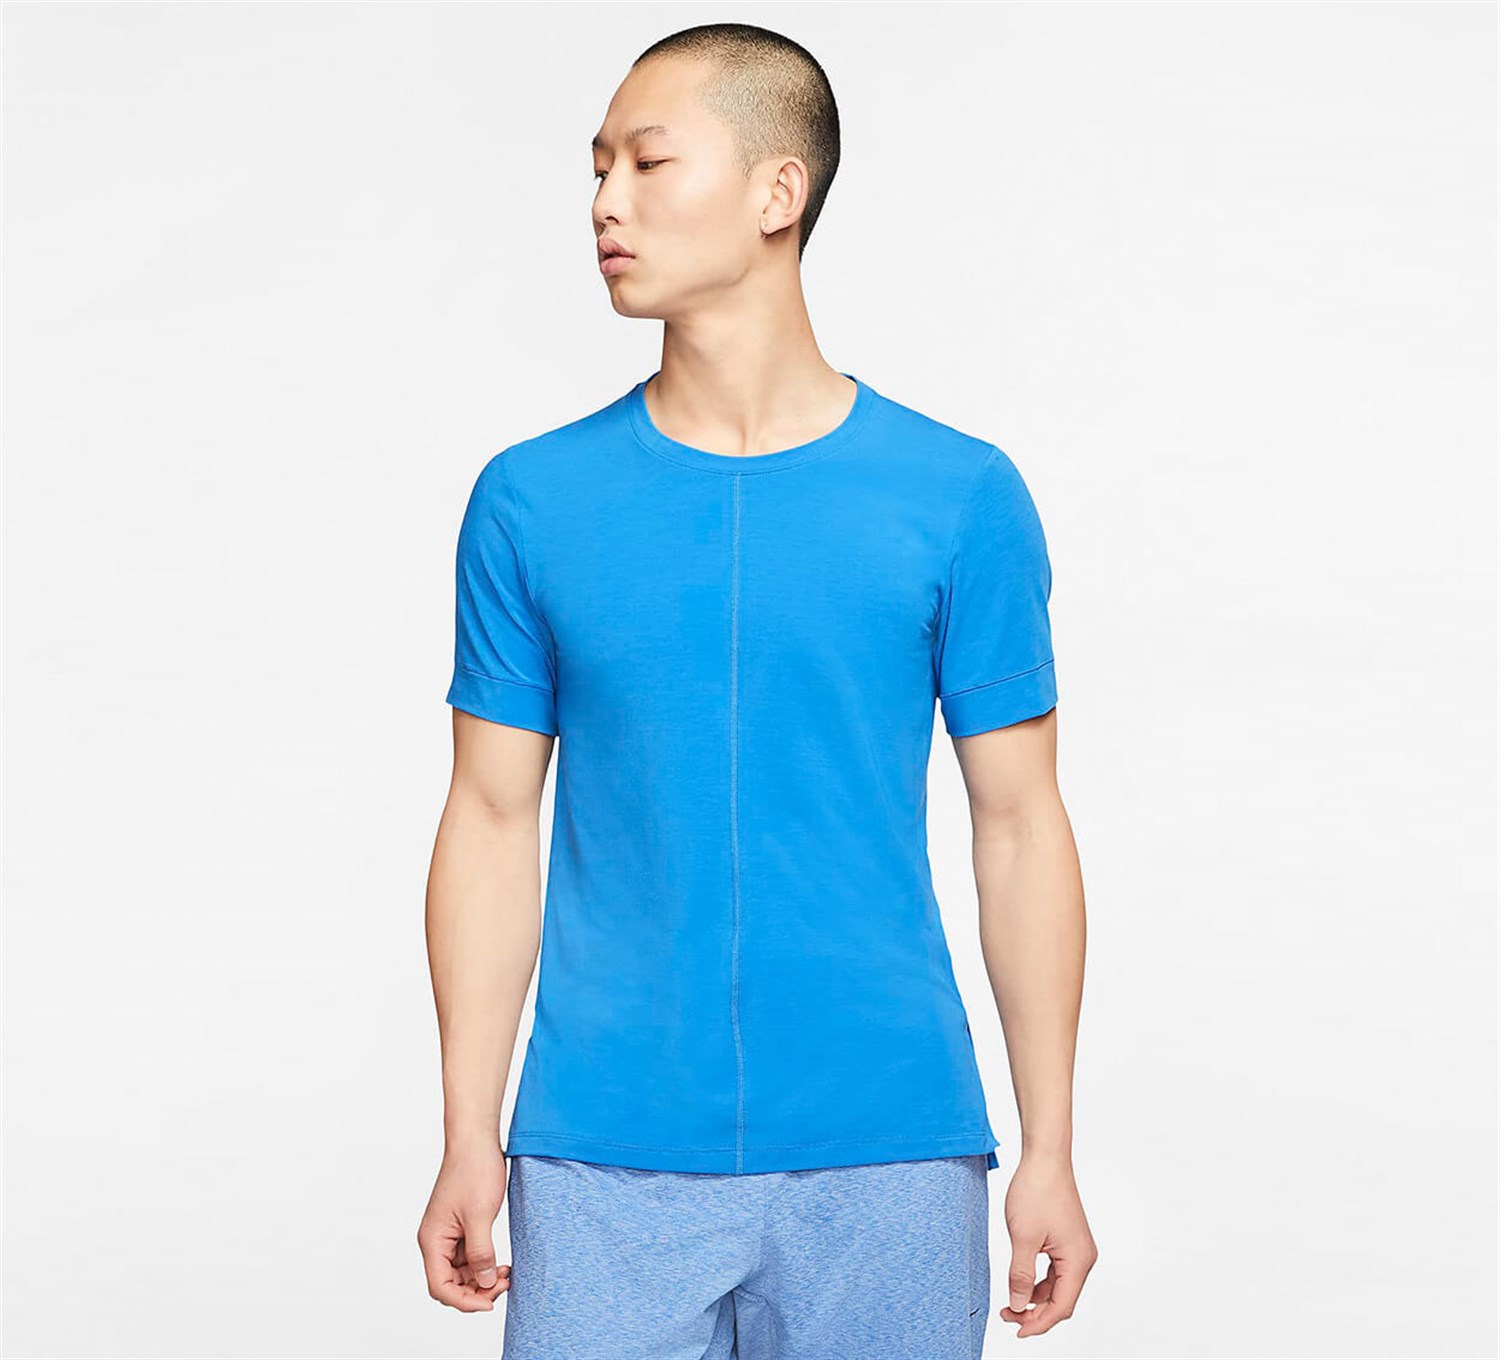 Nike Mens Dry Yoga T-Shirt - Grey